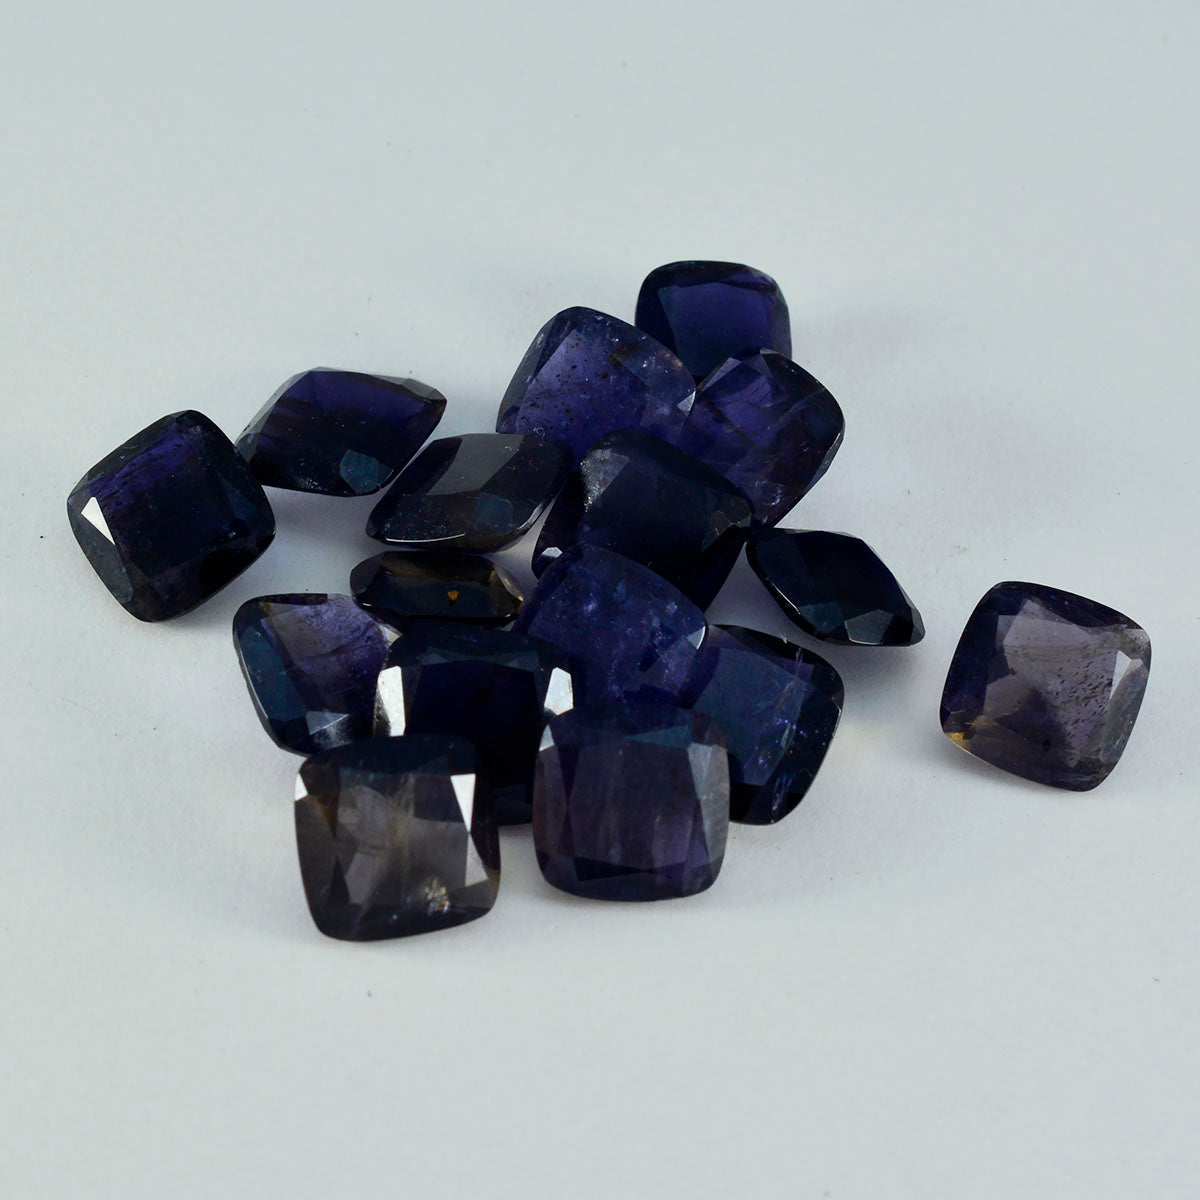 riyogems 1 шт. синий иолит граненый 11x11 мм в форме подушки, отличное качество, свободный драгоценный камень